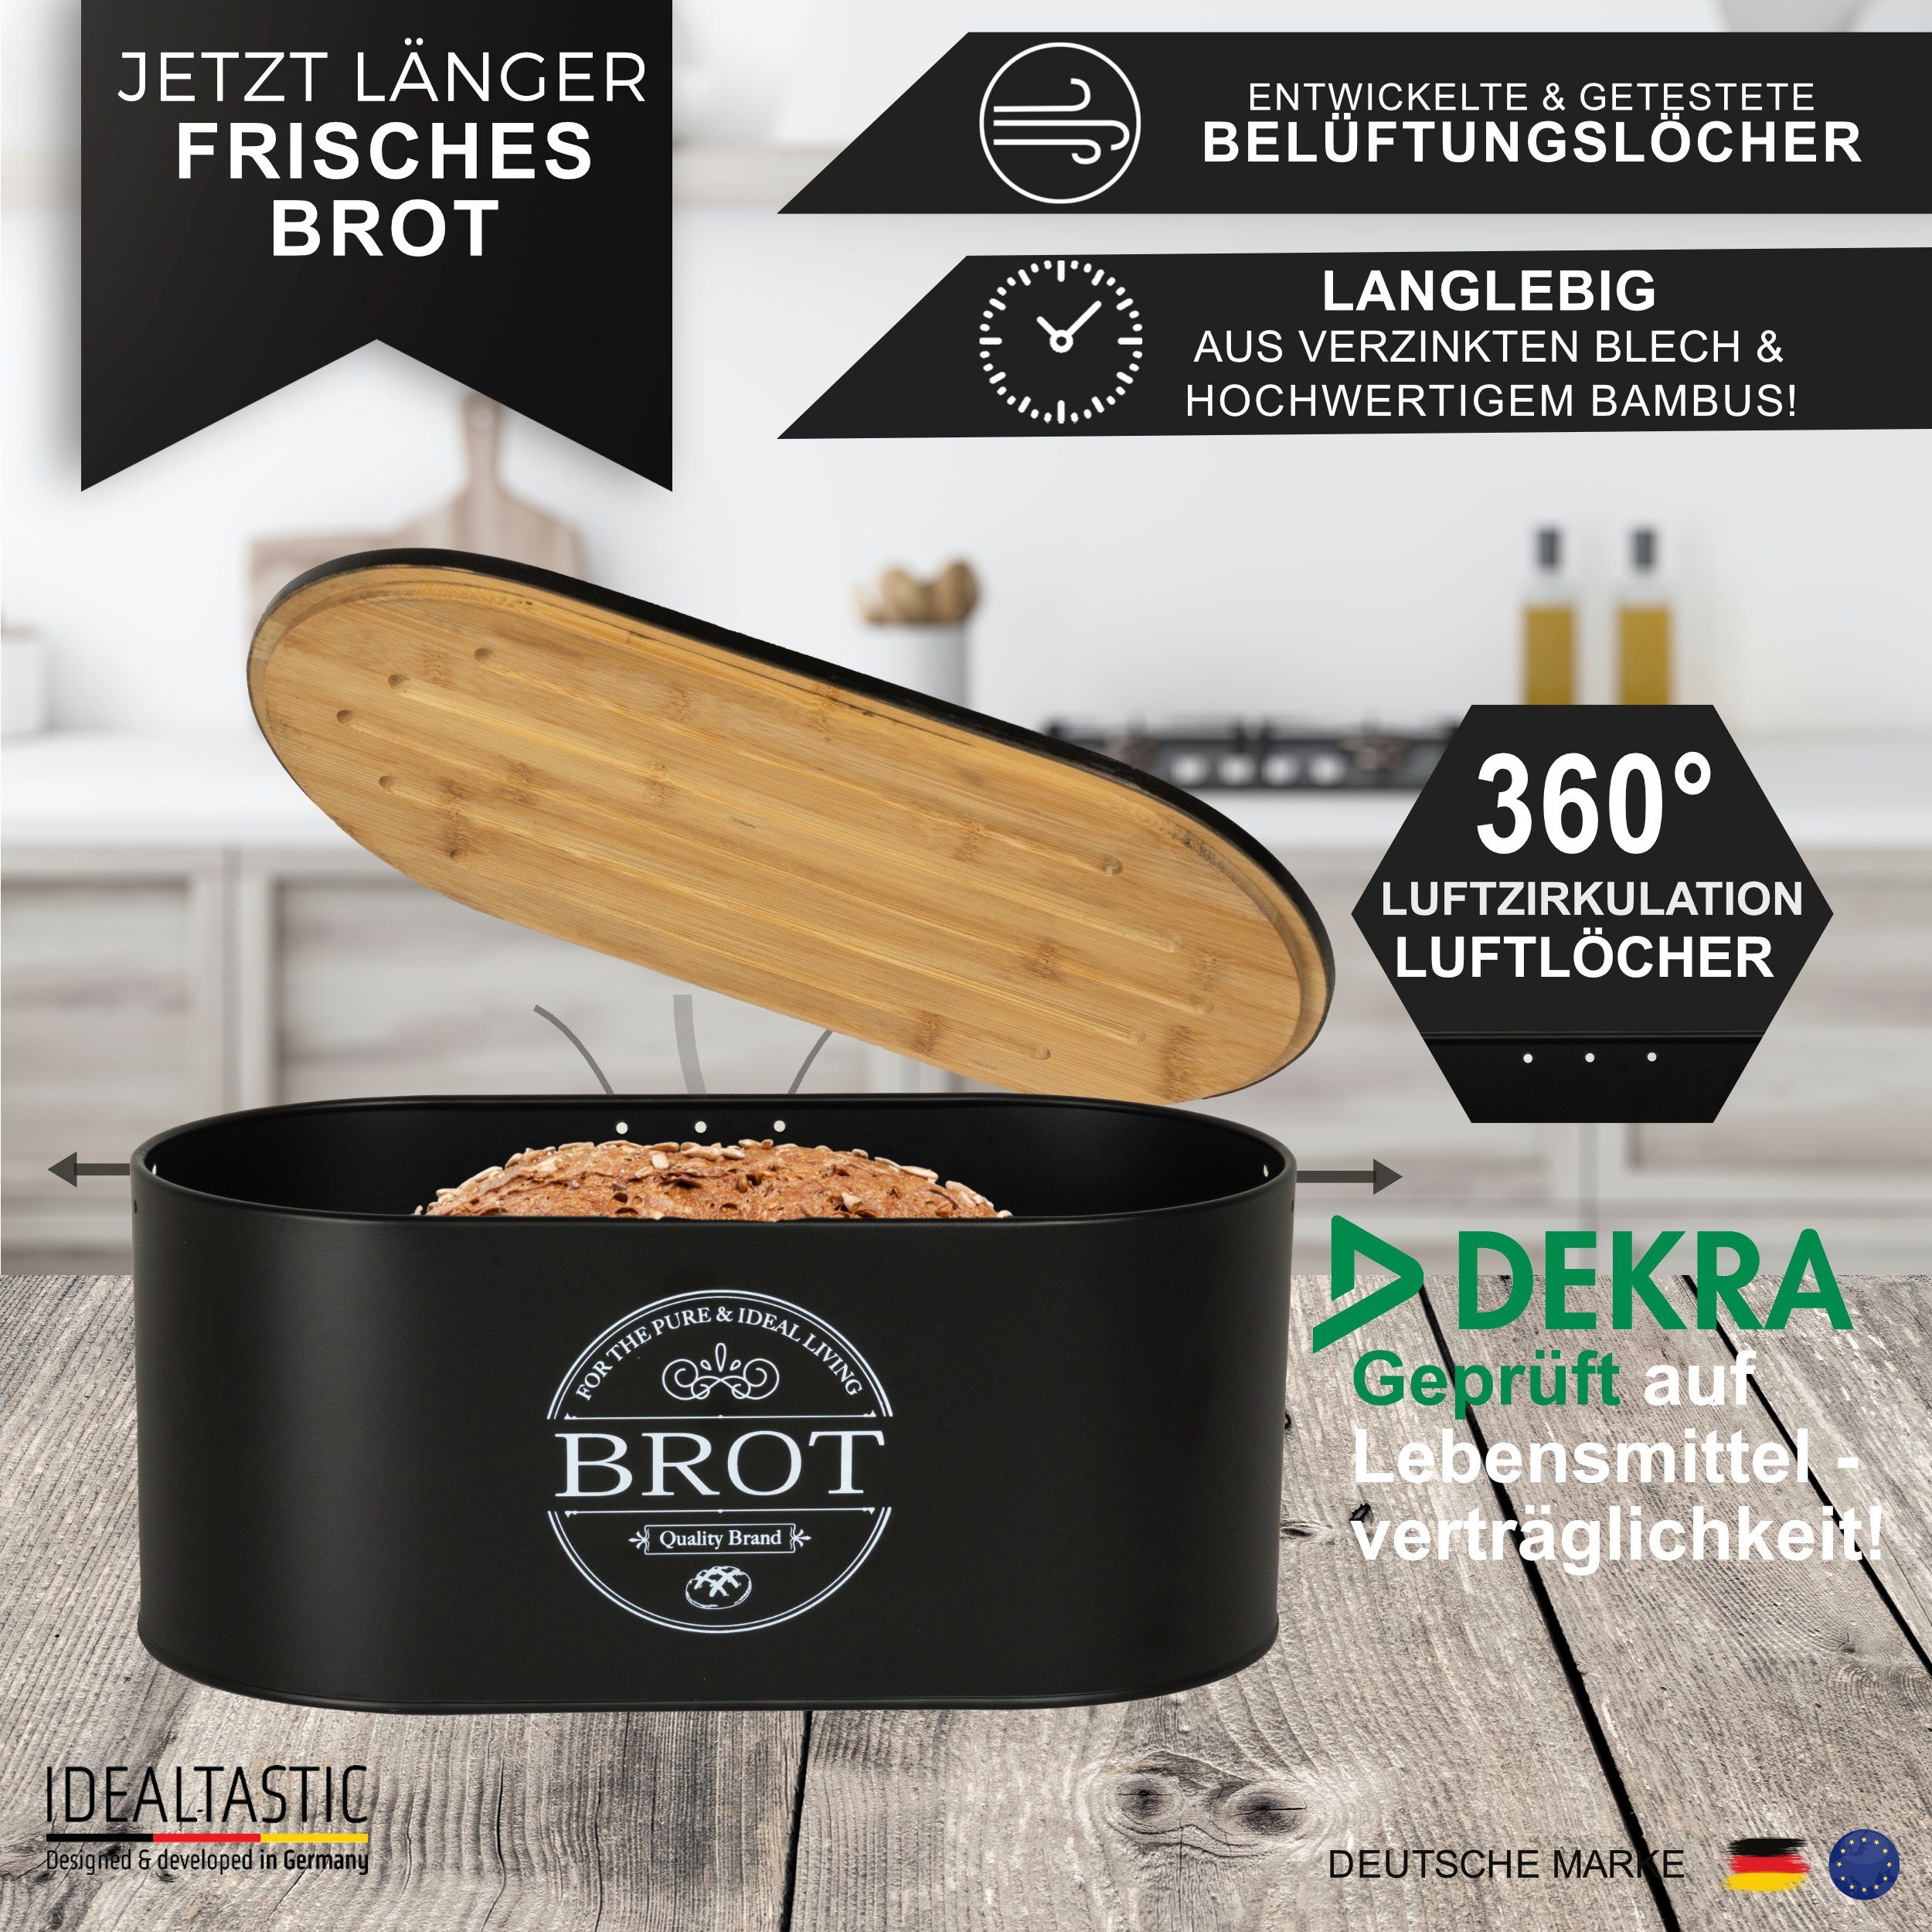 IDEALTASTIC Brotkasten Premium 2-in-1 Brotkasten für die ideale Brot  Aufbewahrung, Stahl, Länger frischhaltende Brotbox & speziell entwickelter  Luftzirkulation